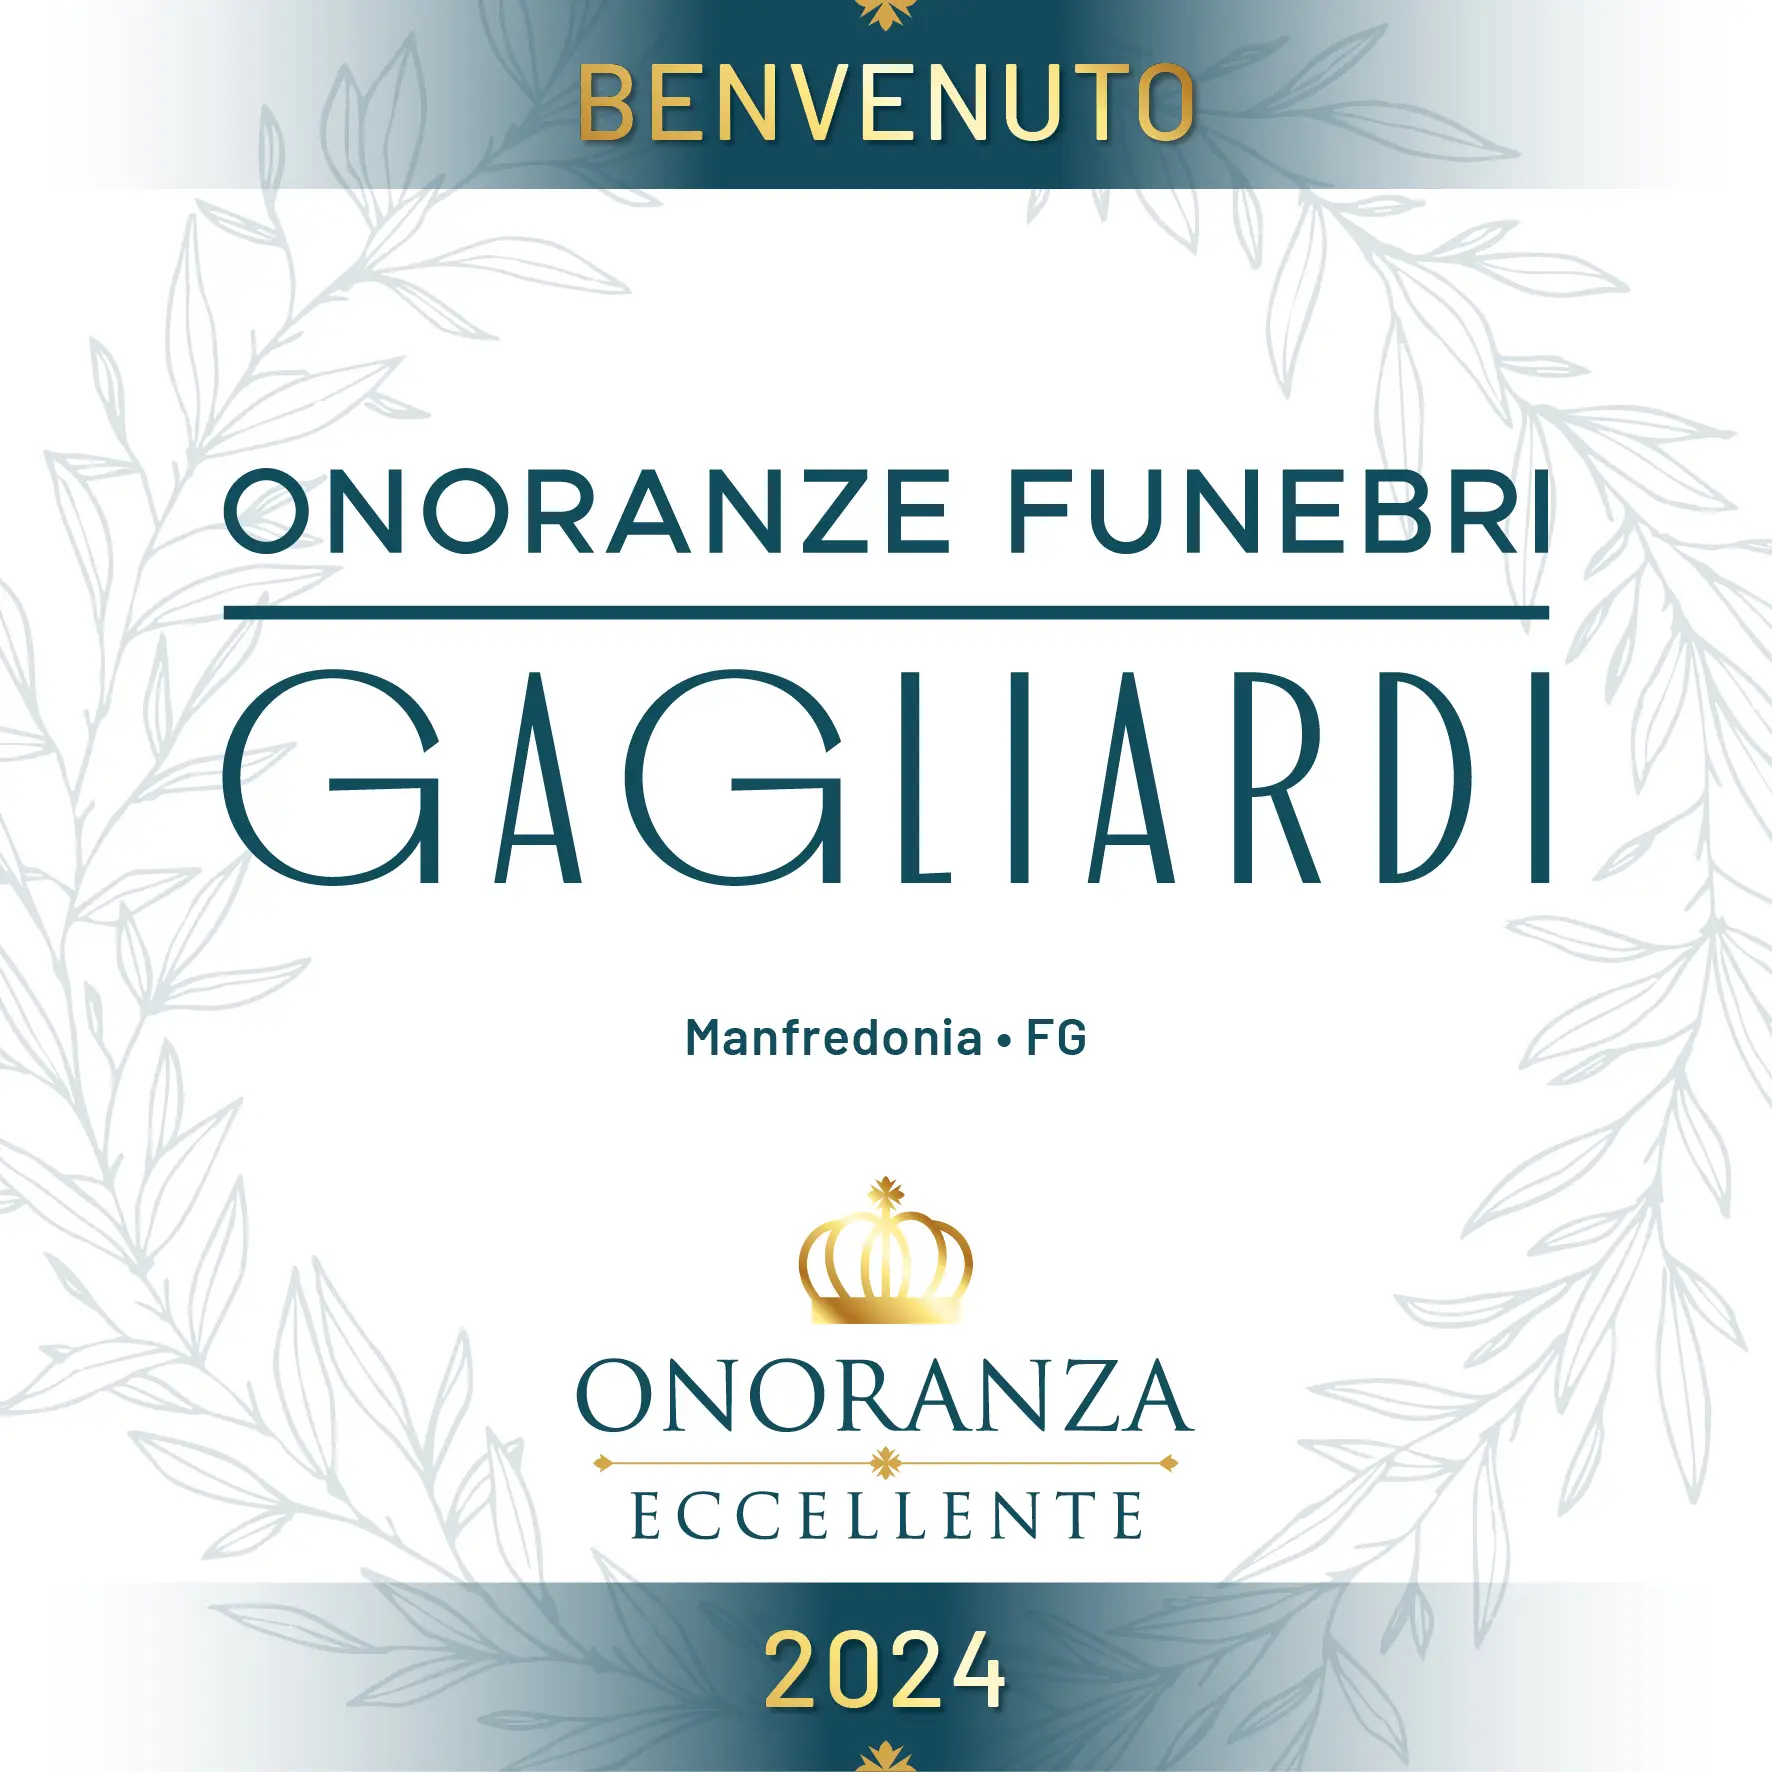 gagliardi_onoranza_funebre_eccellente